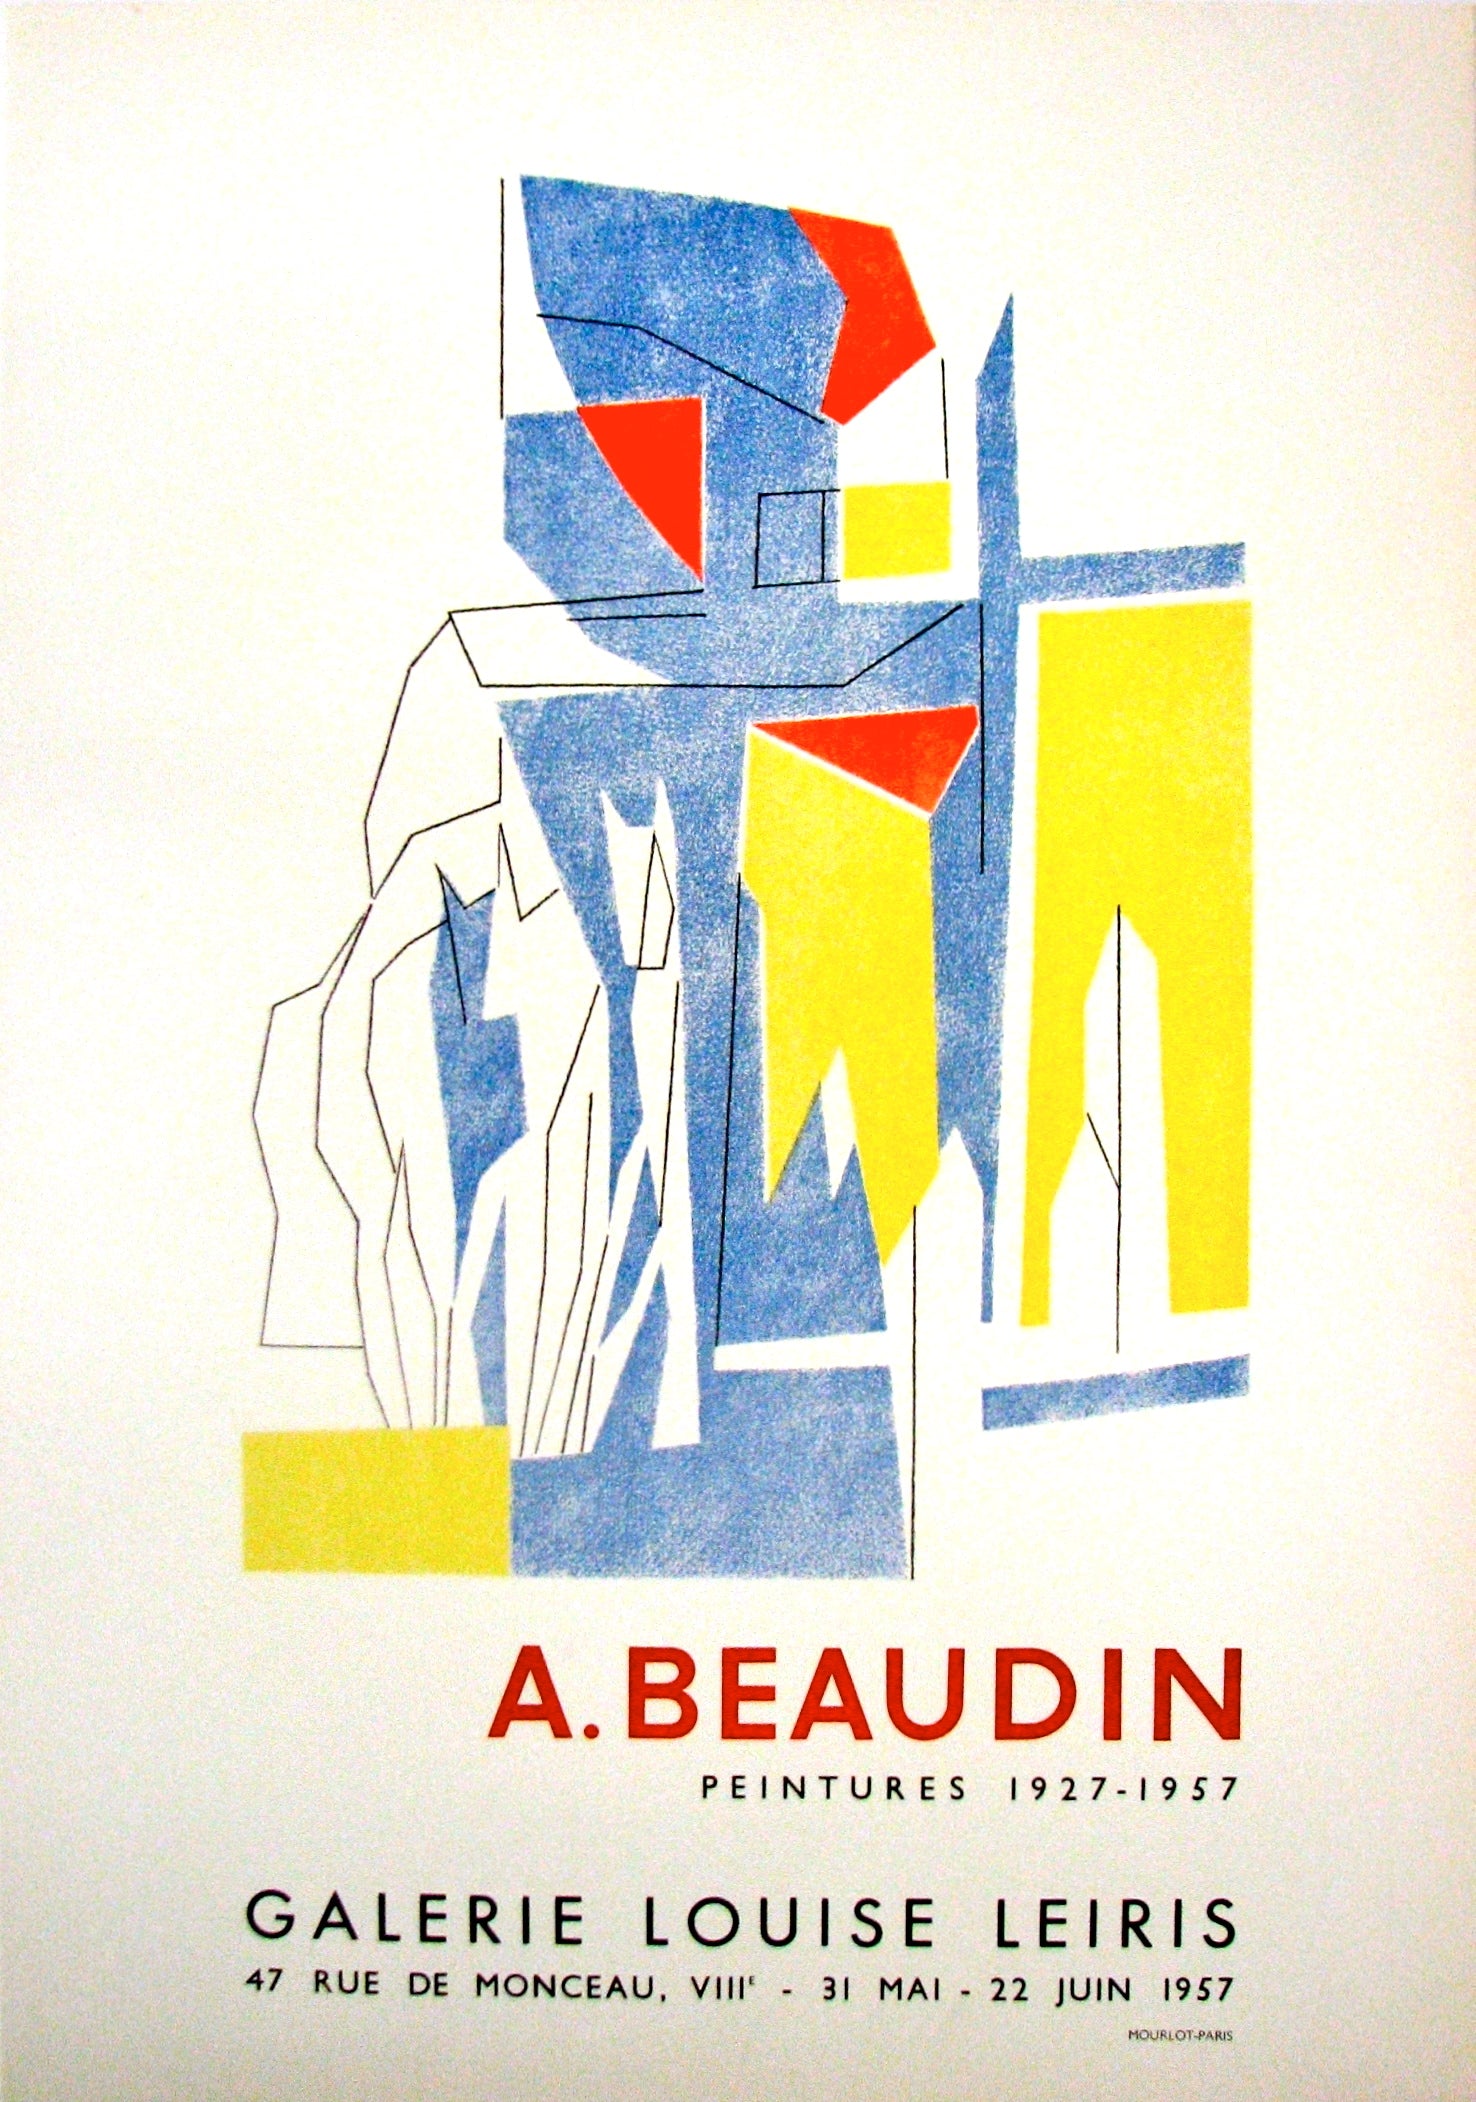 Galerie Louise Leiris - Peintures by André Beaudin, 1957 – Mourlot